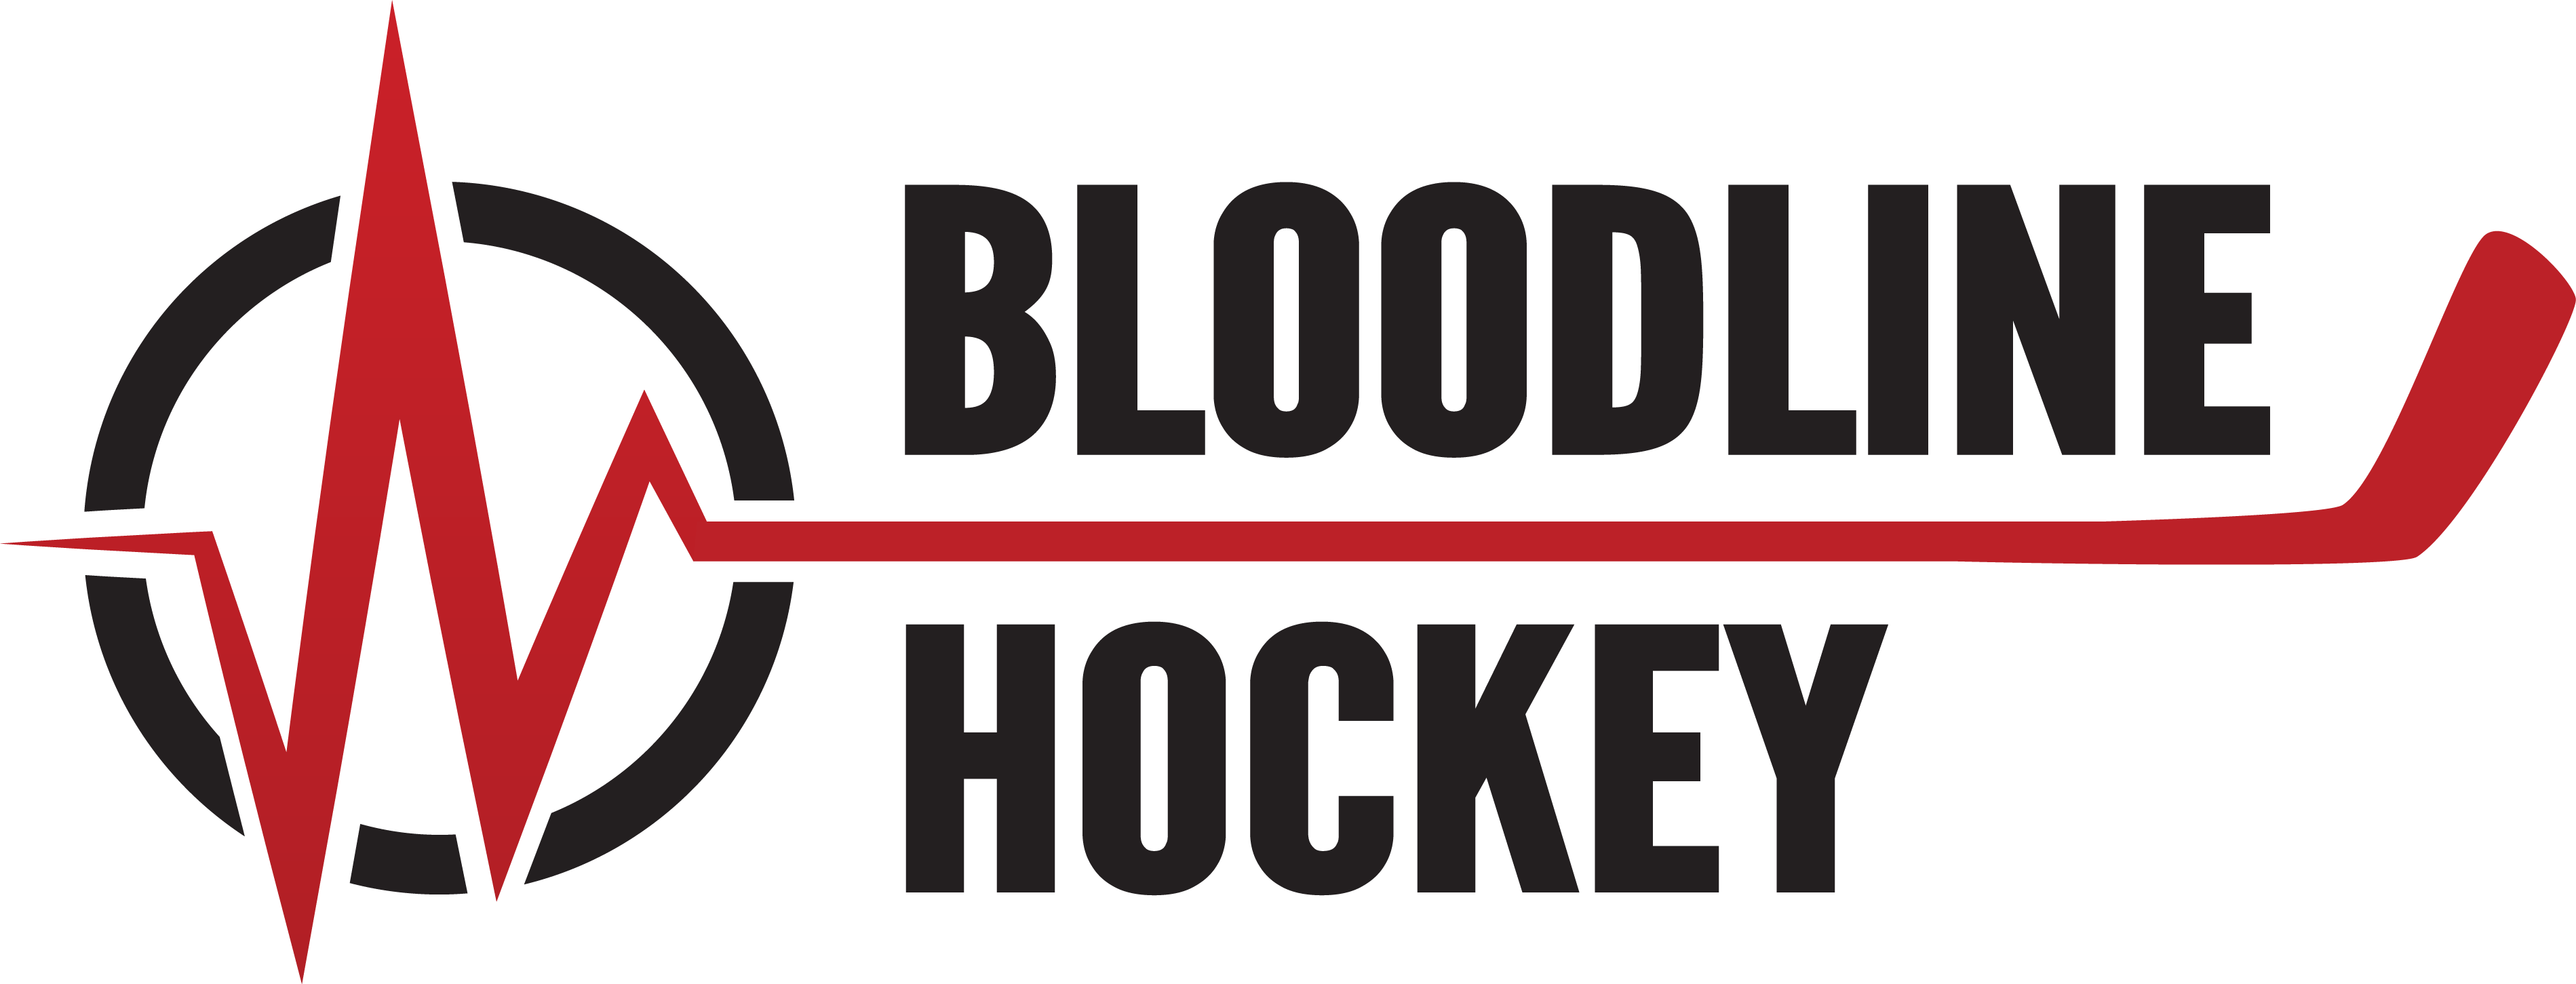 http://bloodlinehockey.com/wp-content/uploads/2020/09/cropped-BloodlineLogoBlack.png